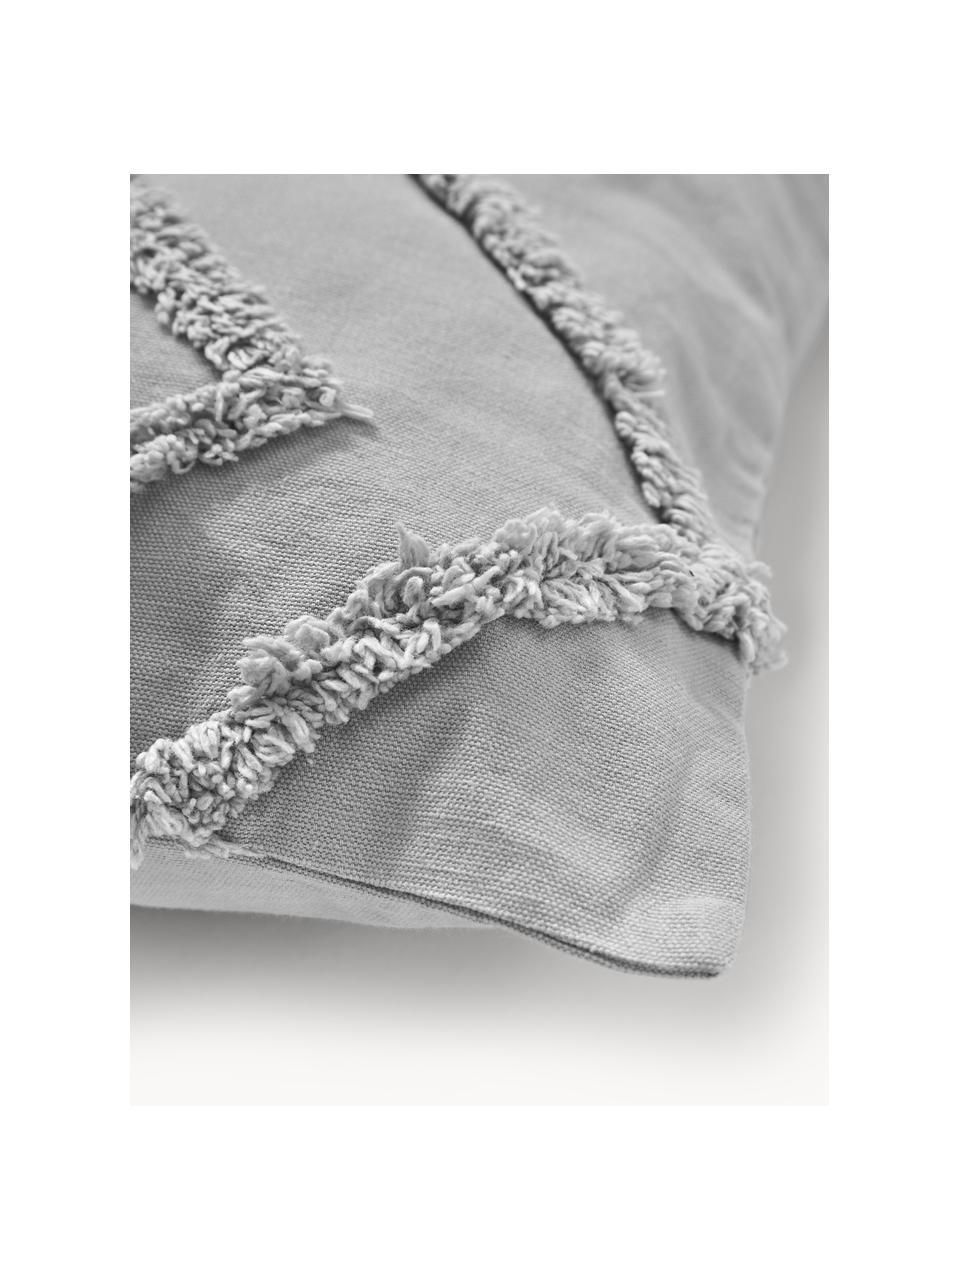 Funda de almohada texturizada de percal Faith, 100% algodón, Gris, An 50 x L 50 cm